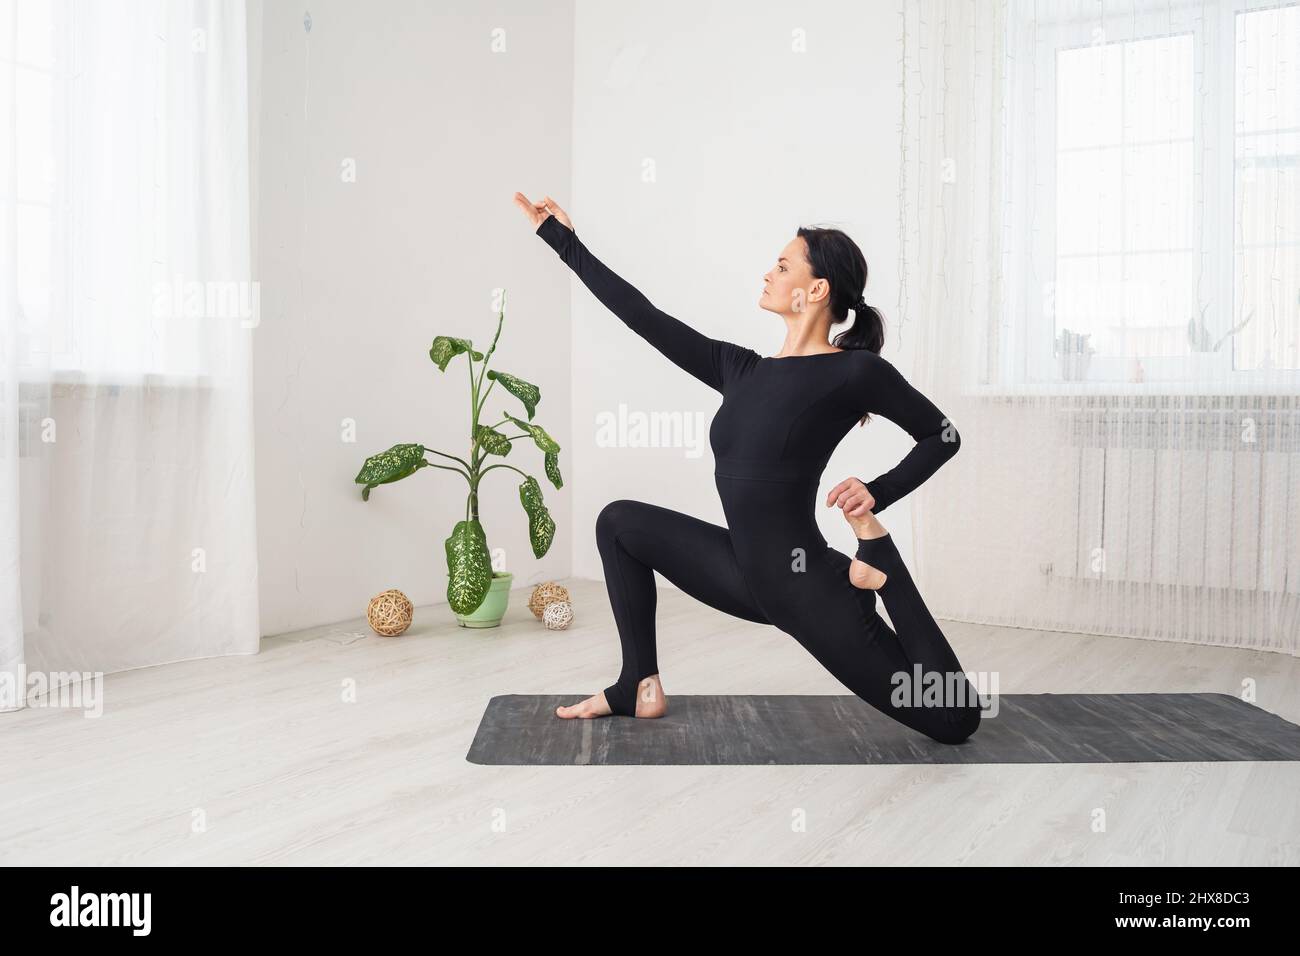 Frau in schwarzer Sportkleidung, die Yoga praktiziert und mit virasana anjaneyasana trainiert, in niedriger Ausfallhaltung, sitzend auf einer Matte in einem Raum am Fenster Stockfoto